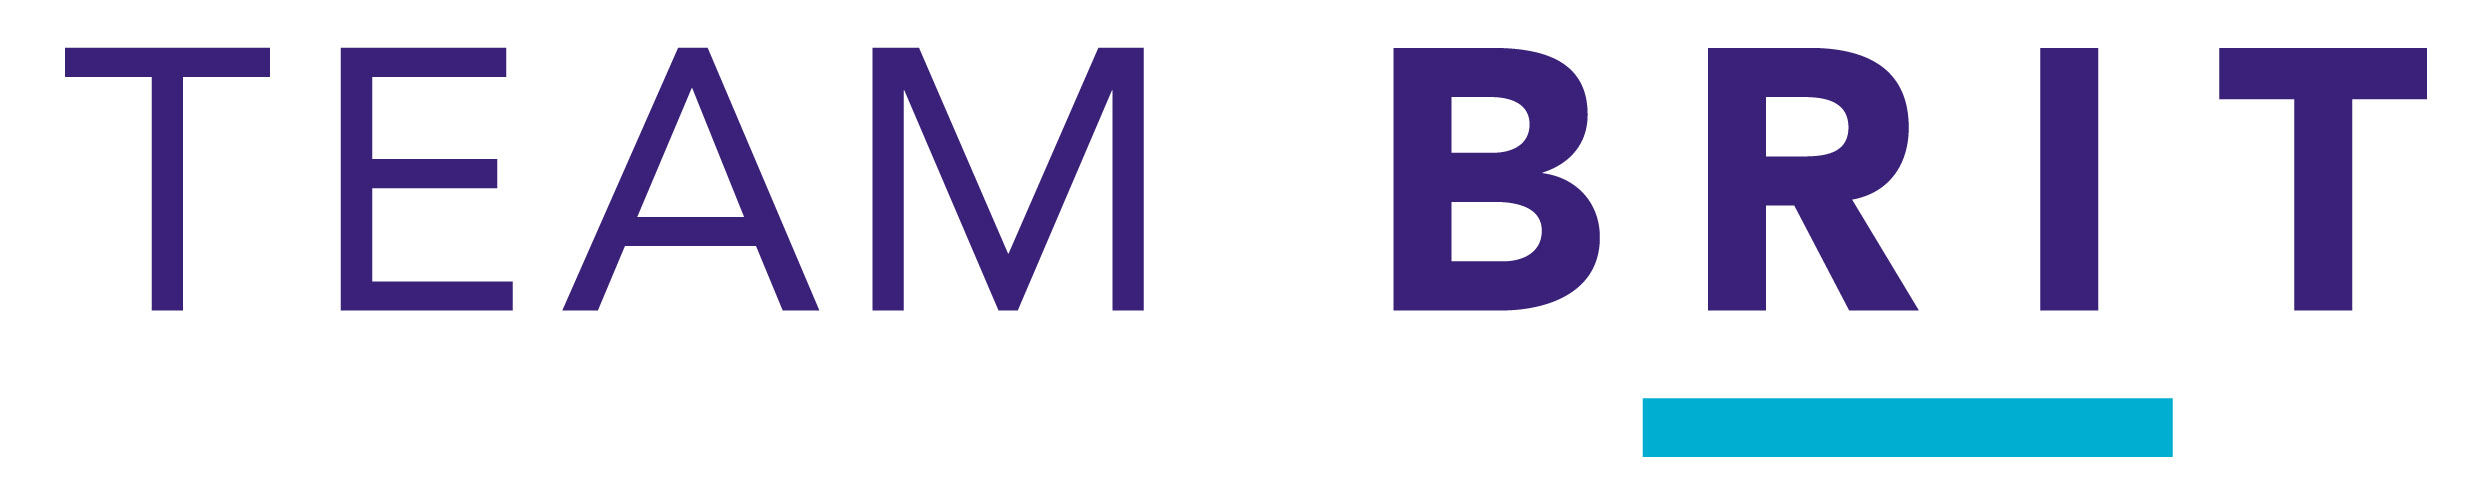 TEAM_BRIT_JPEG_logo.jpg